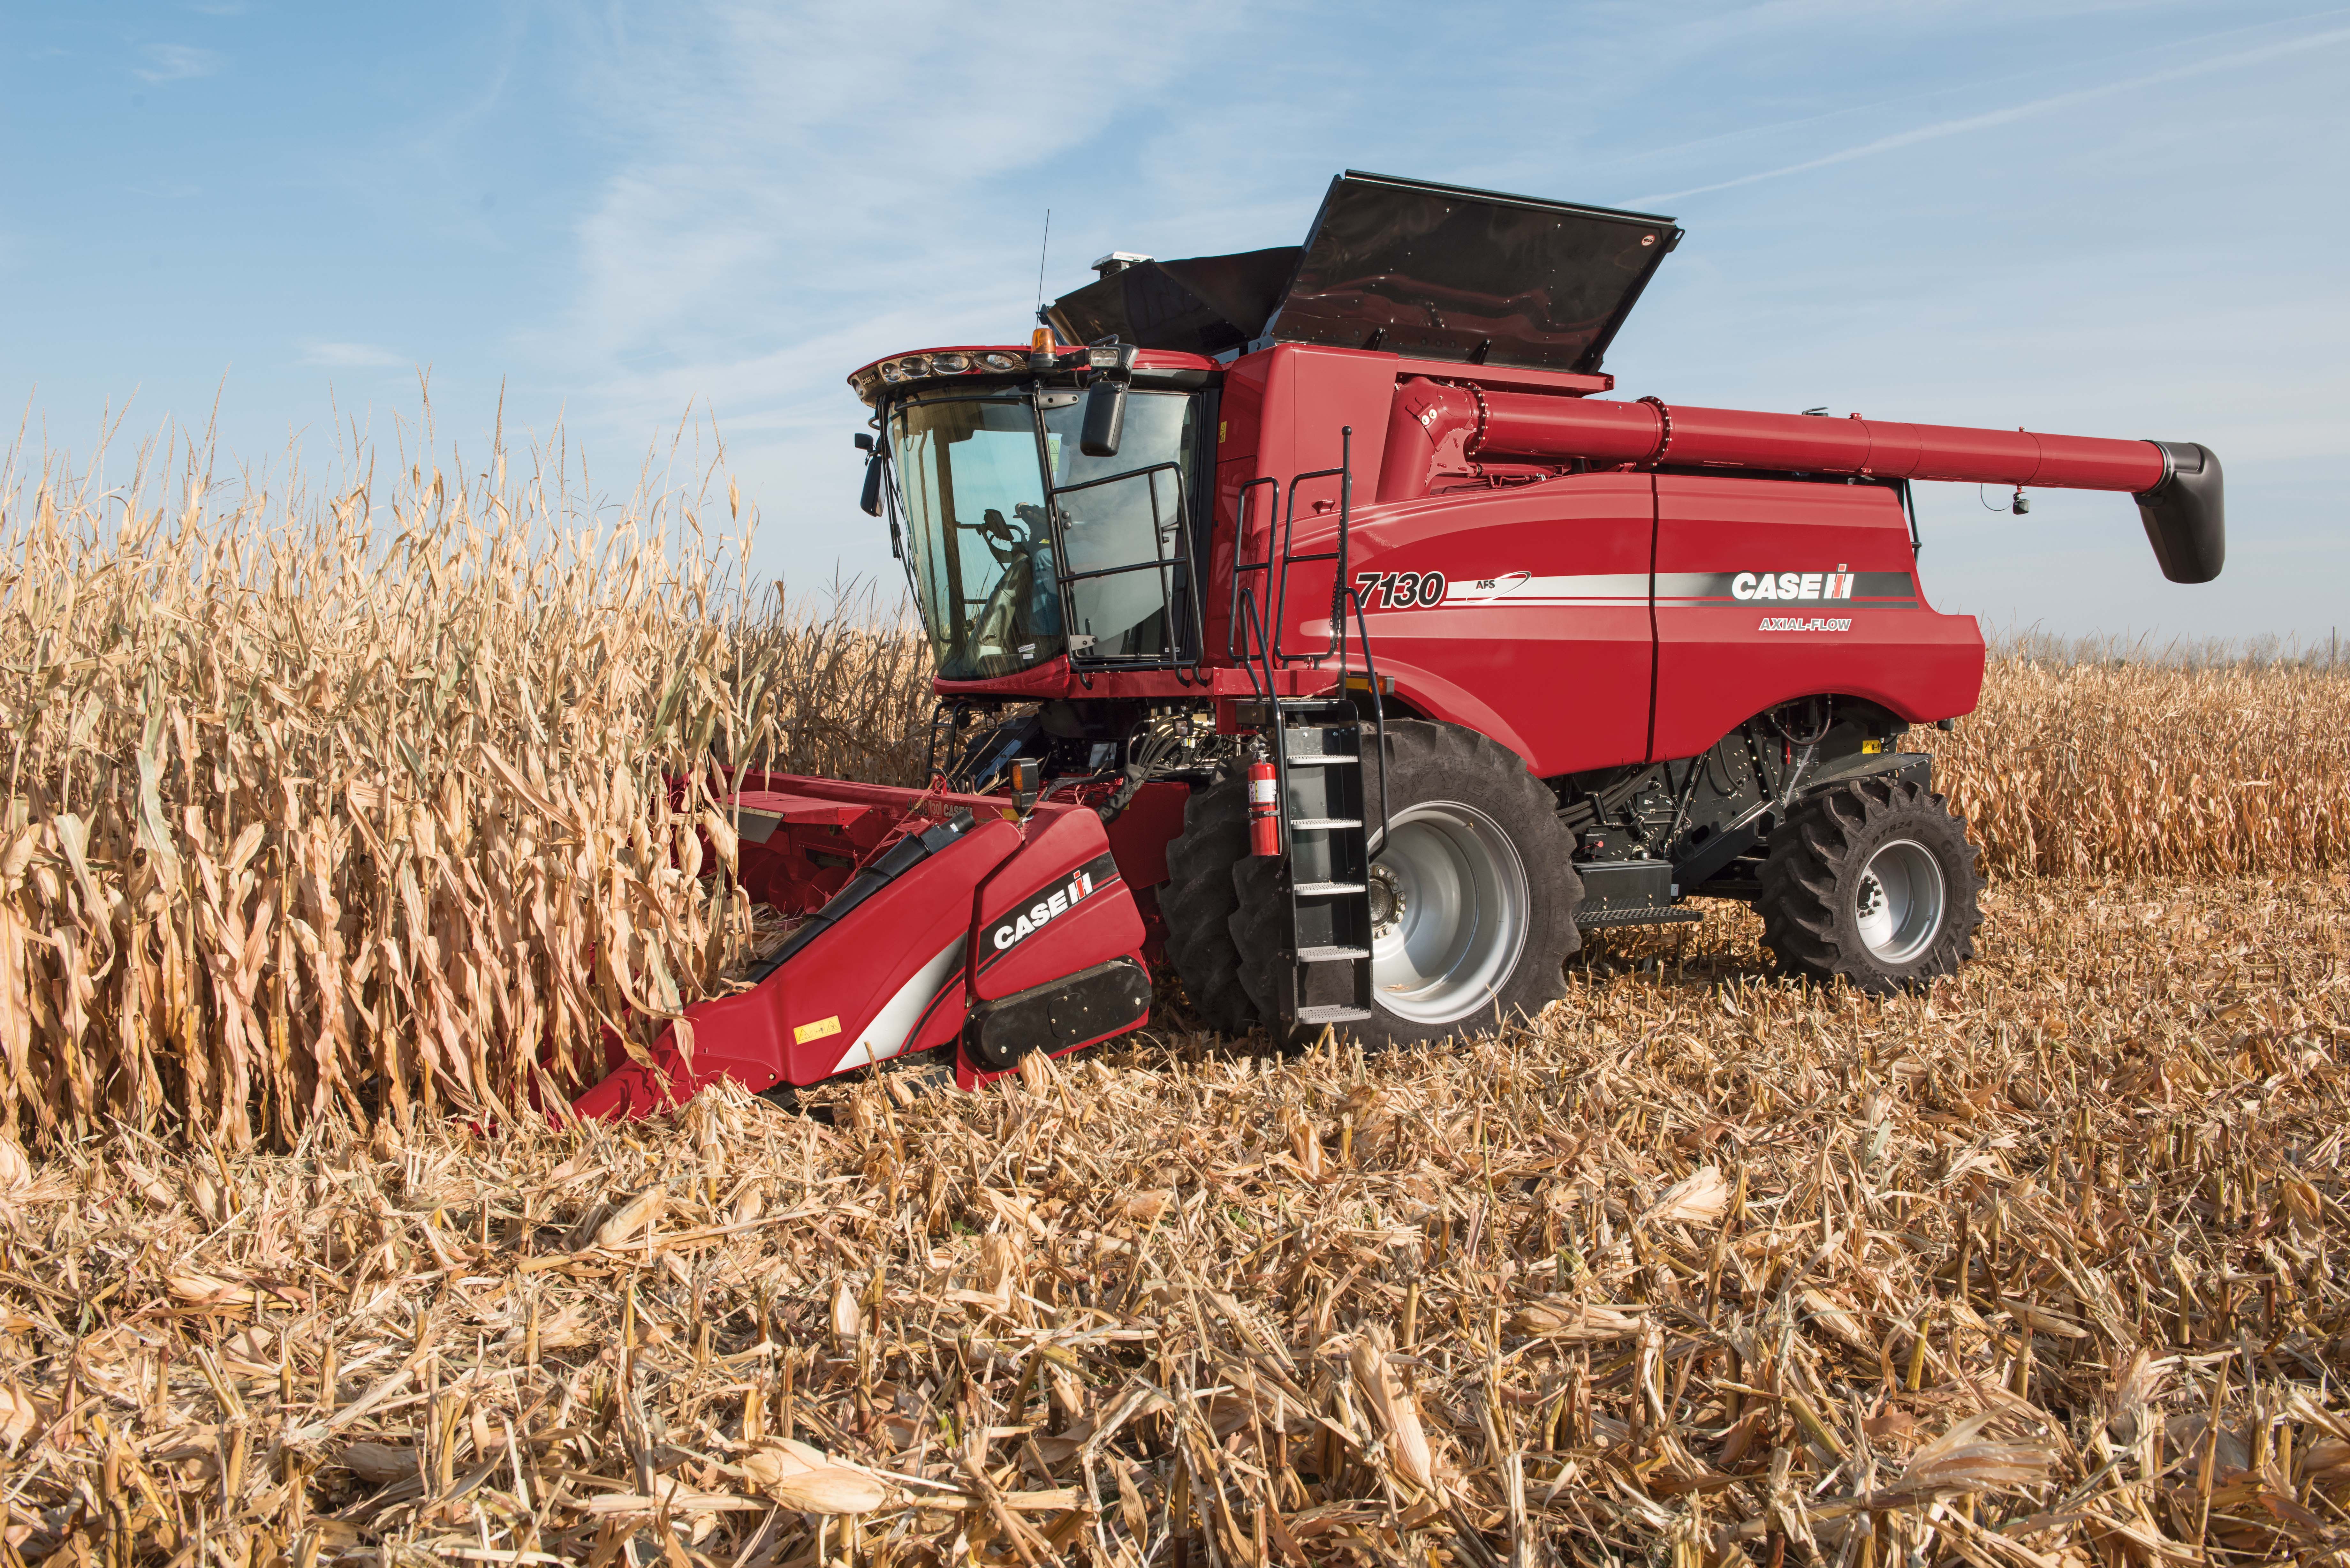 Images Of Combine - 2015 Case Ih Combine Harvesting Corn - HD Wallpaper 